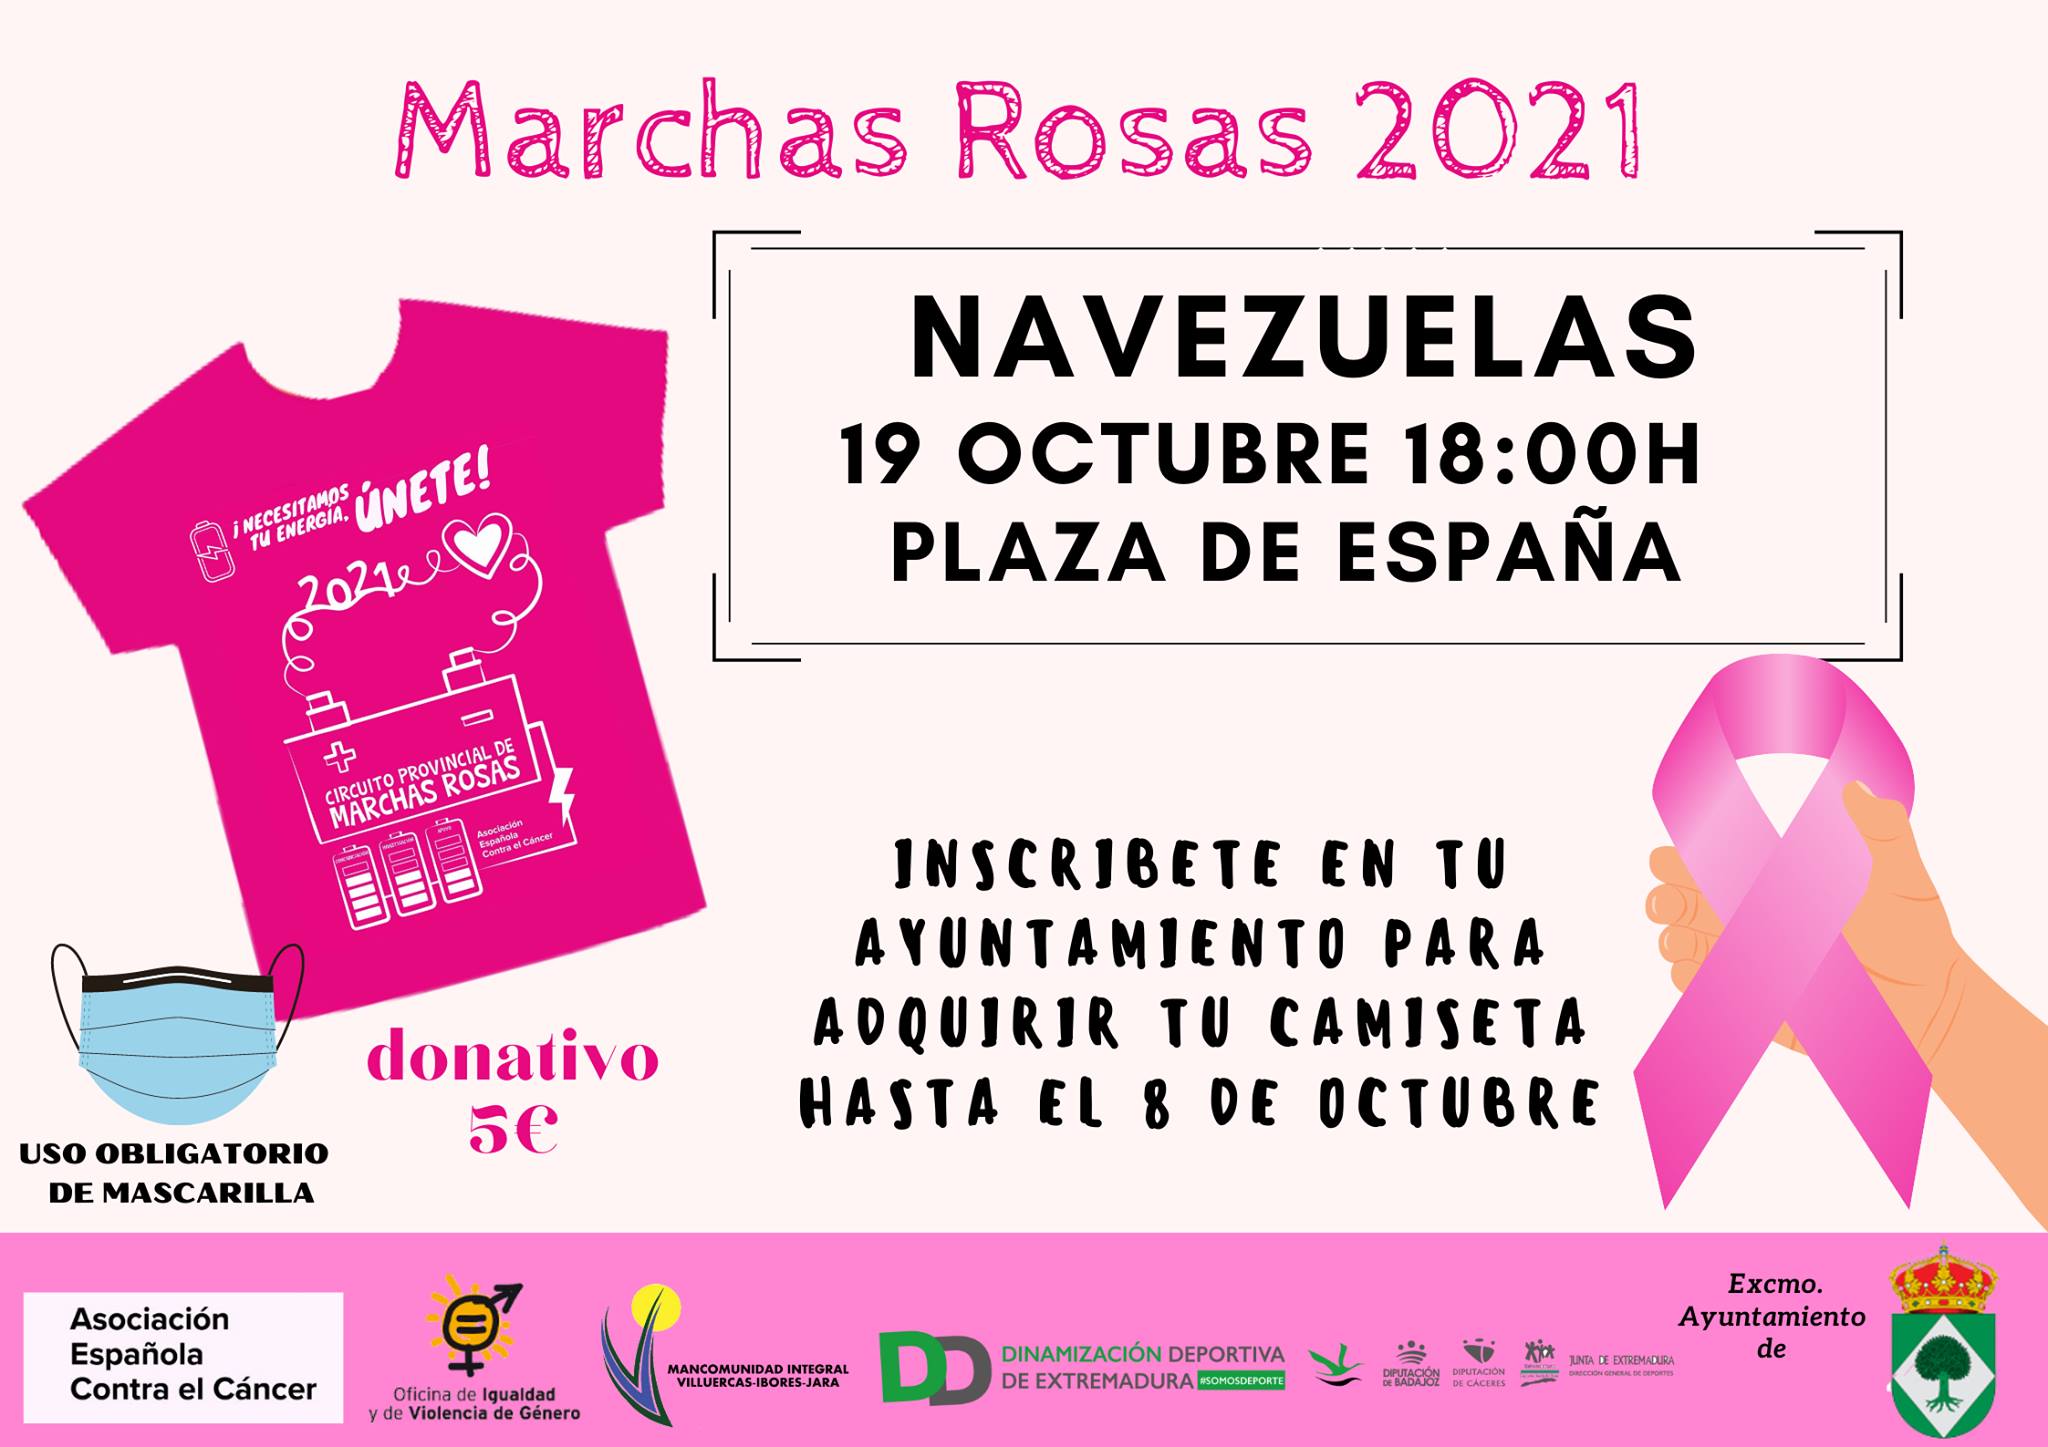 Marchas rosas (2021) - Navezuelas (Cáceres)